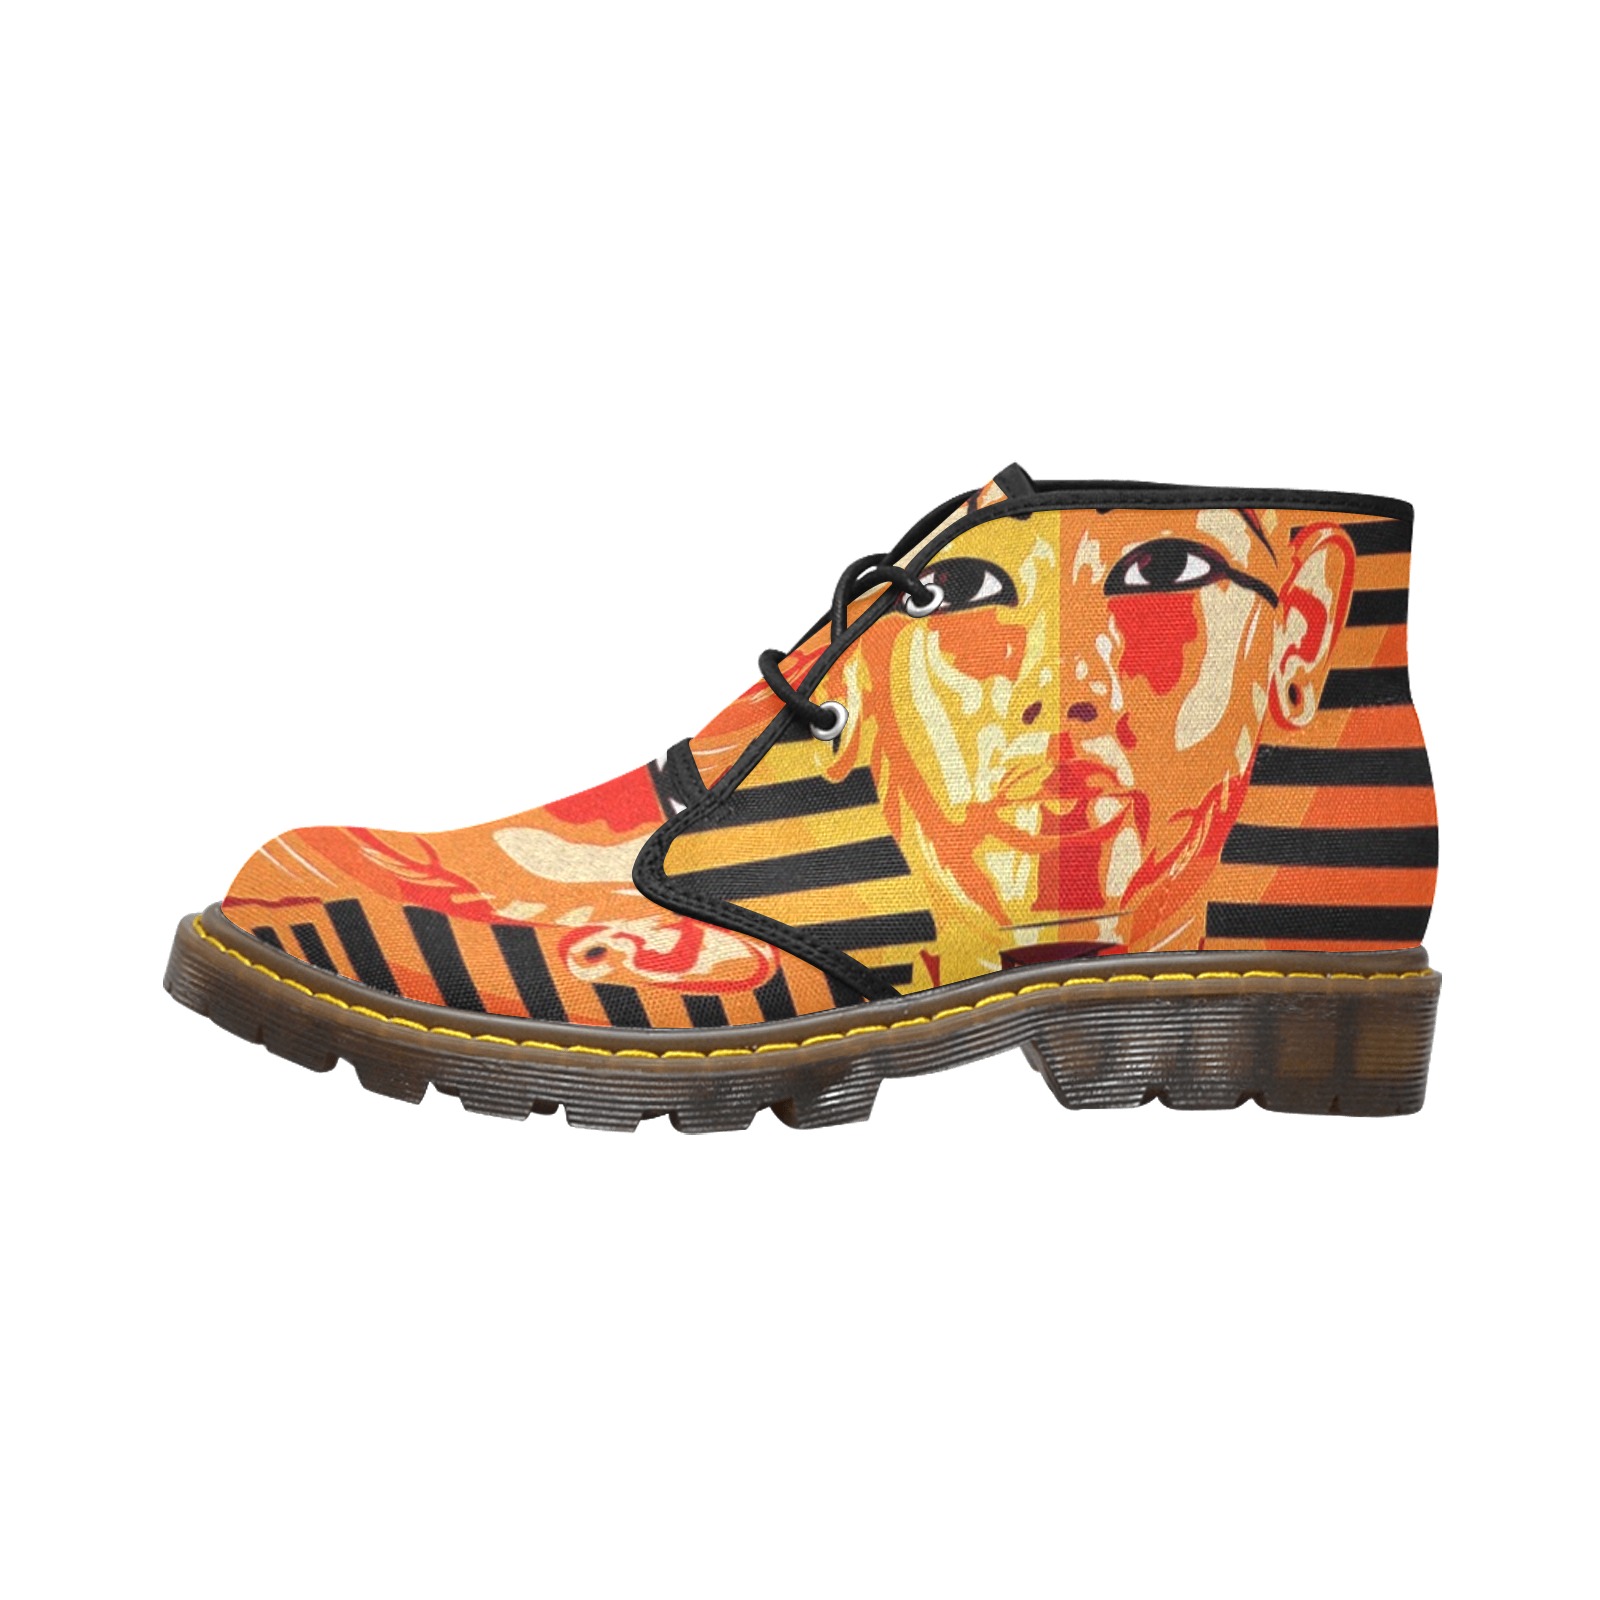 GOLDEN SLUMBER-KING TUT 2 Women's Canvas Chukka Boots (Model 2402-1)